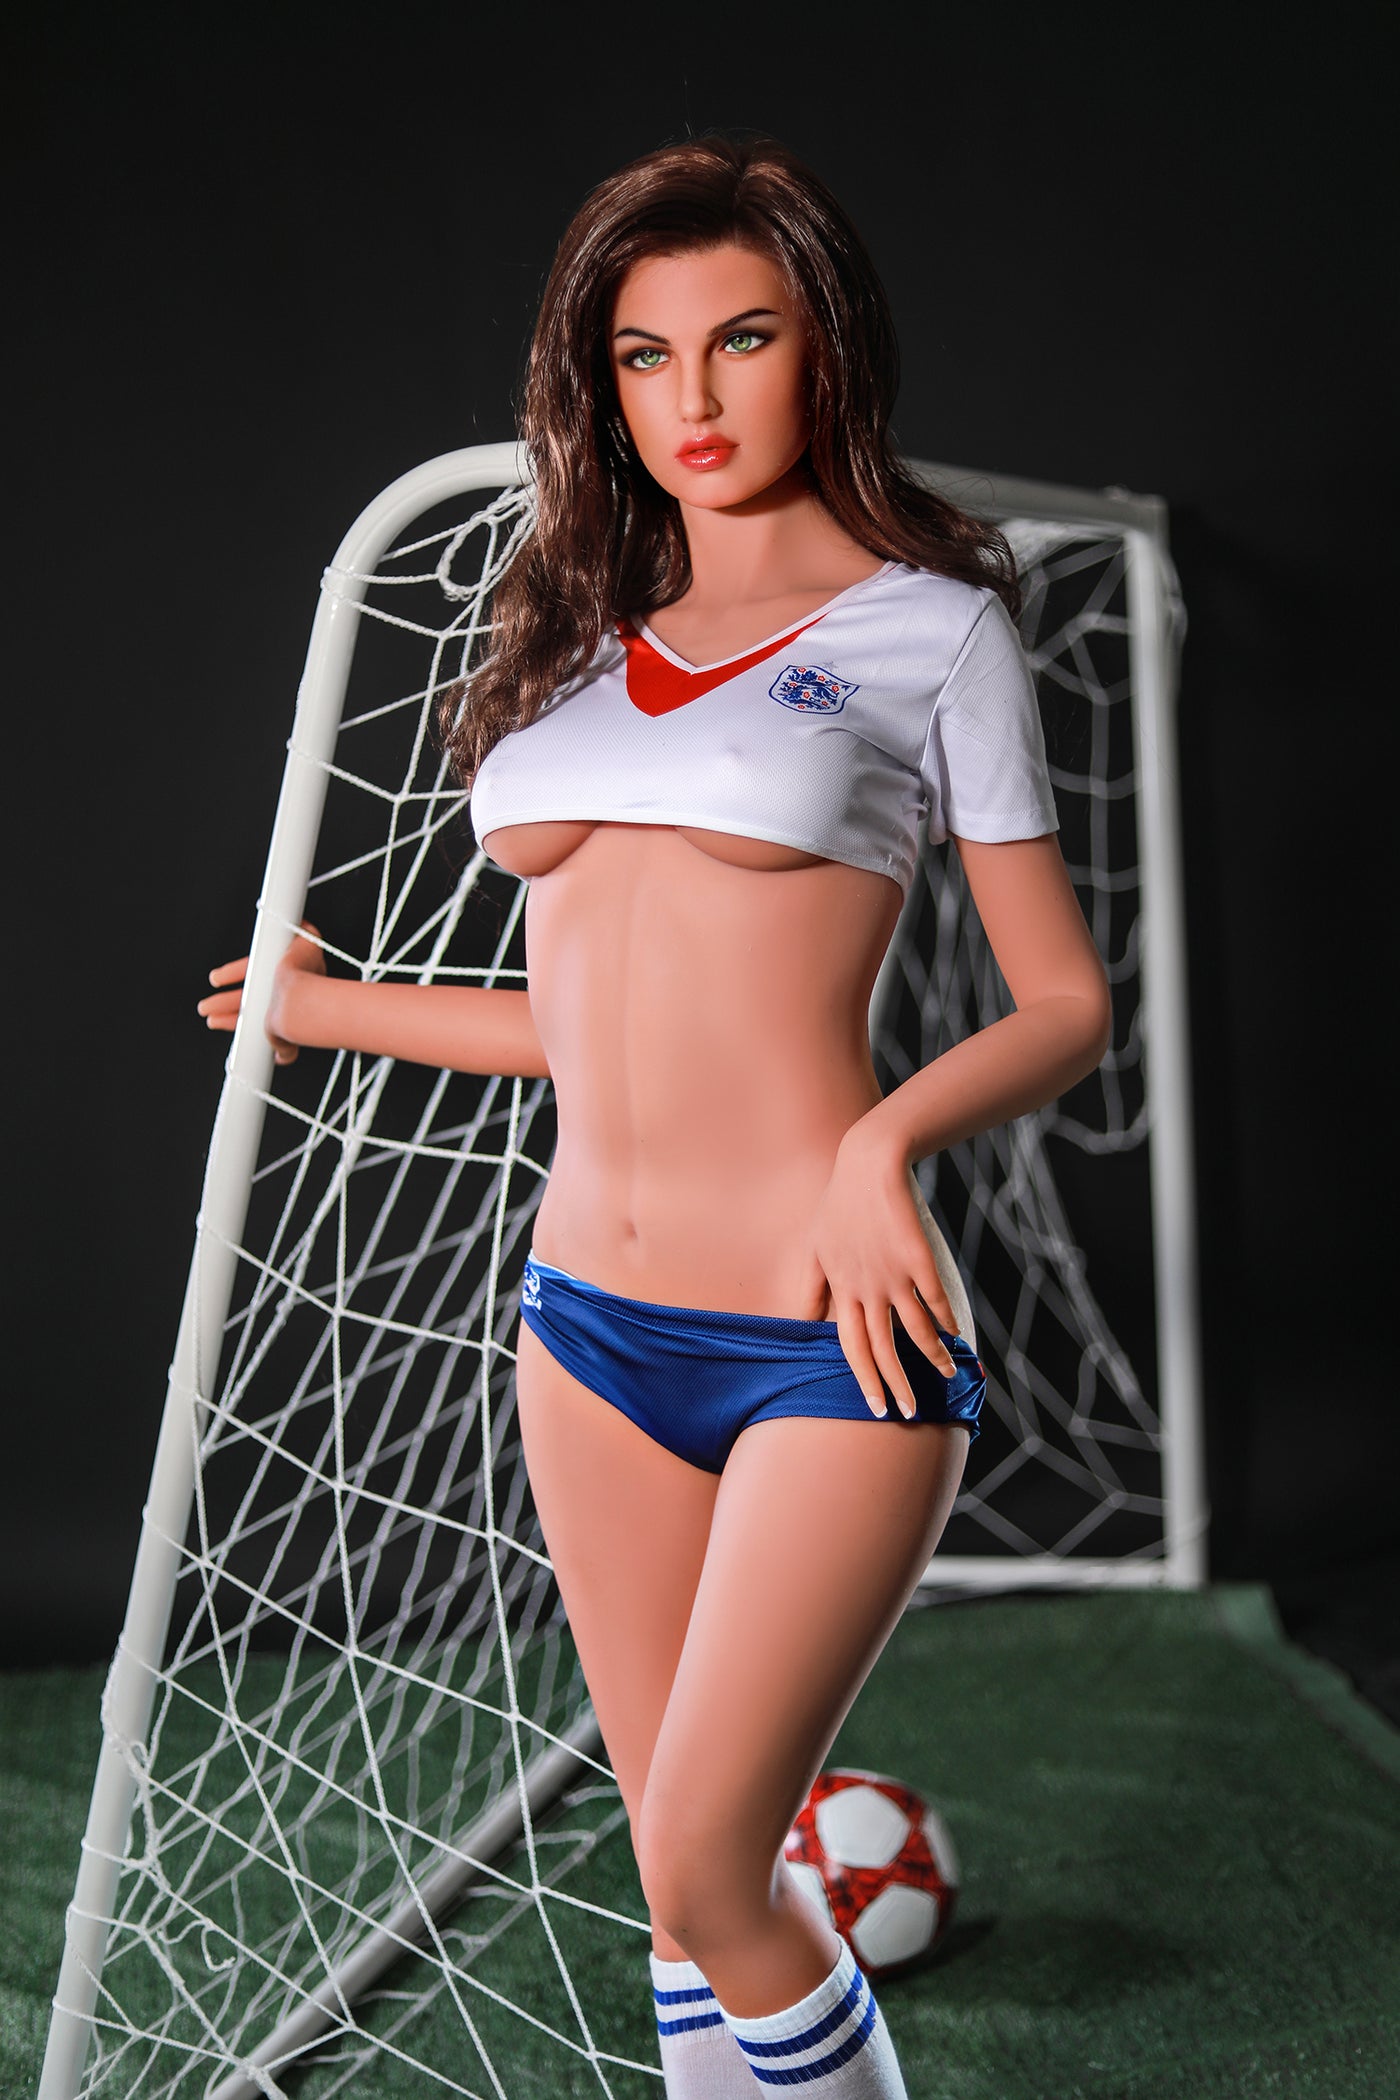 US Stock - RIDMII Elaina 173cm Hot Football Girl Love Sex Doll - 173cm, New Arrivals, US Stock - SexDollPartner